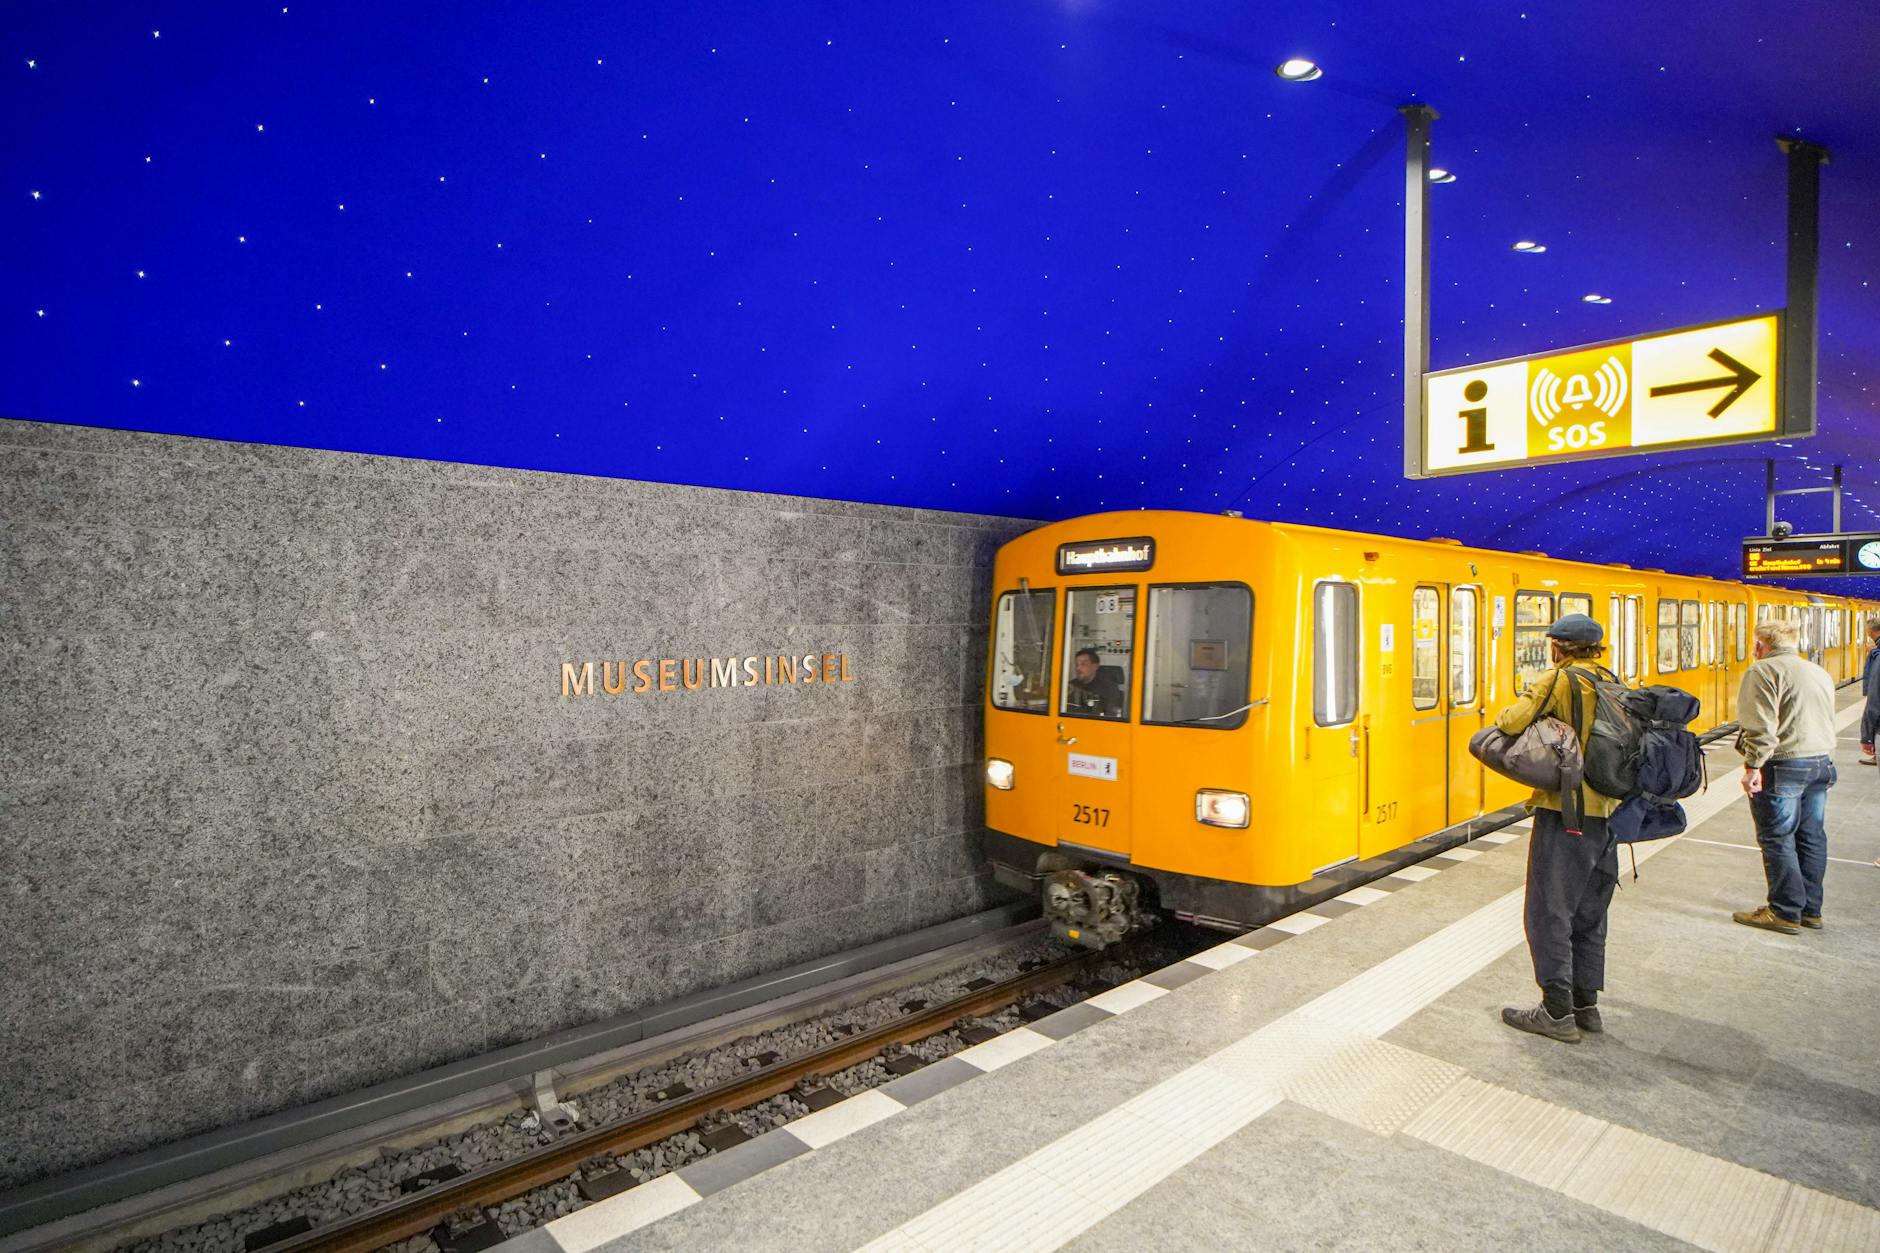 Der U5-Bahnhof Museumsinsel liegt 20 Meter unterhalb der Stadt und ist deshalb angenehm kühl.